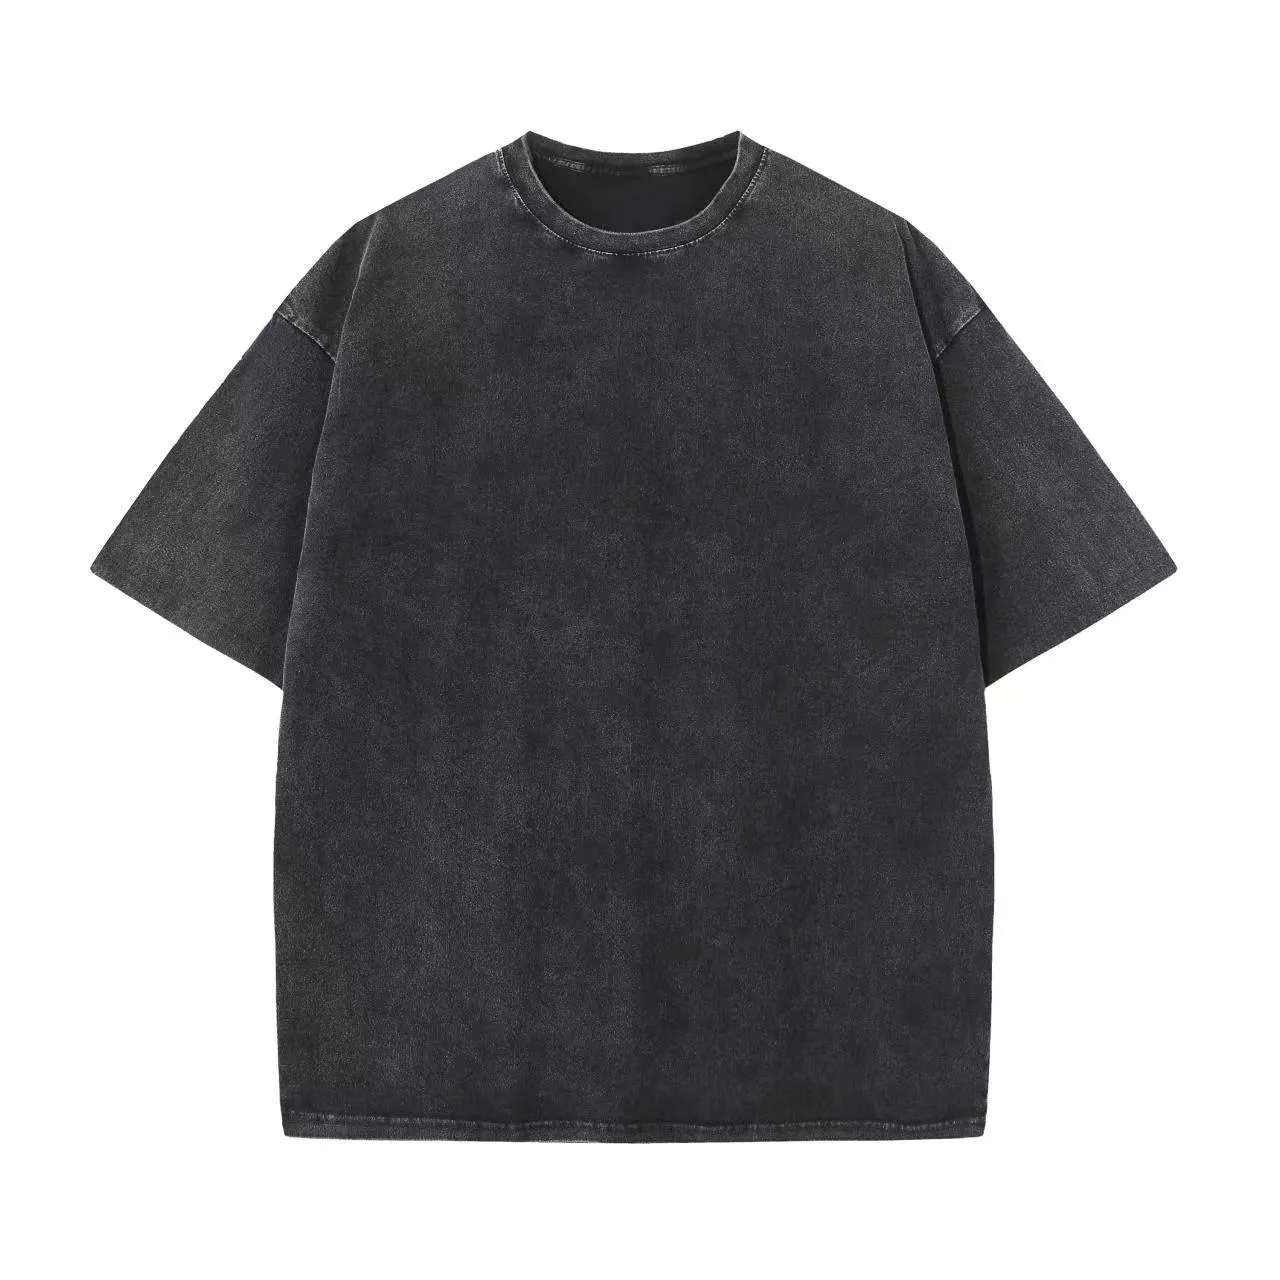 फैशन कस्टम एसिड वॉश ग्राफिक टी शर्ट पुरुषों ने कपास गर्मियों में यूनिसेक्स एसिड वॉश टी-शर्ट 100% मुद्रित किया